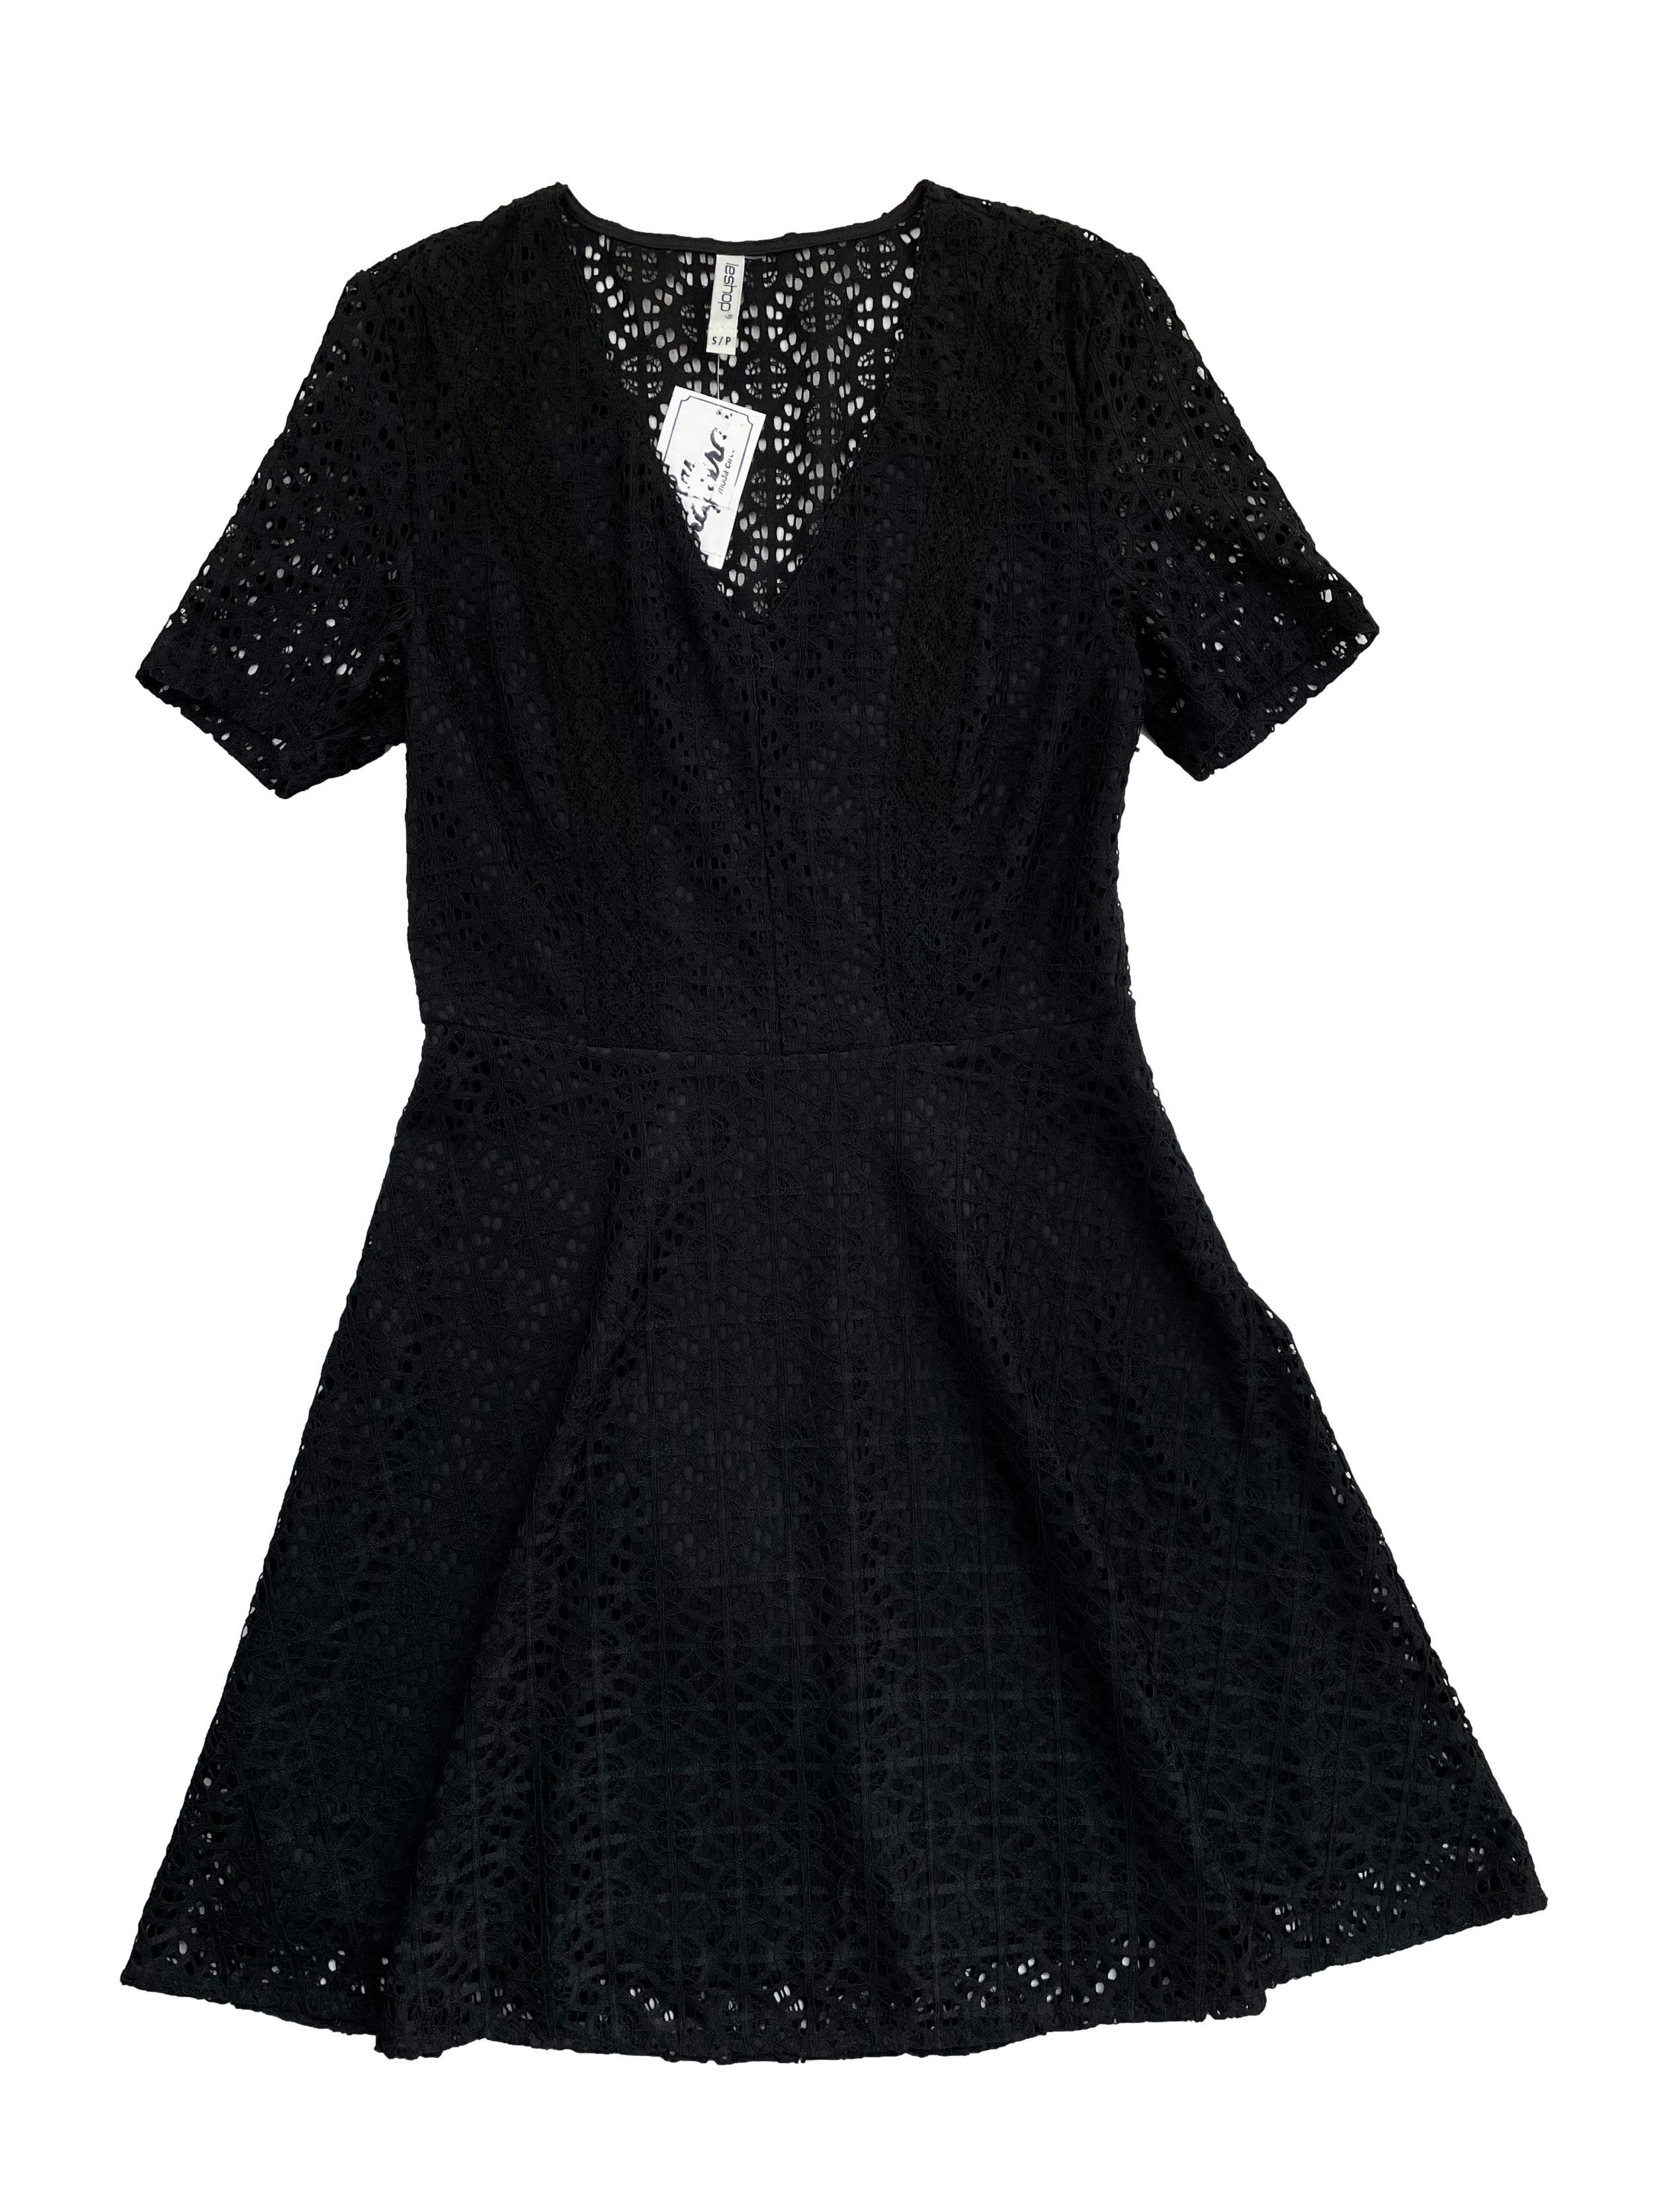 Vestido negro de encaje con forro, corte en cintura y cierre invisible lateral. Busto 82cm, Largo 80cm.